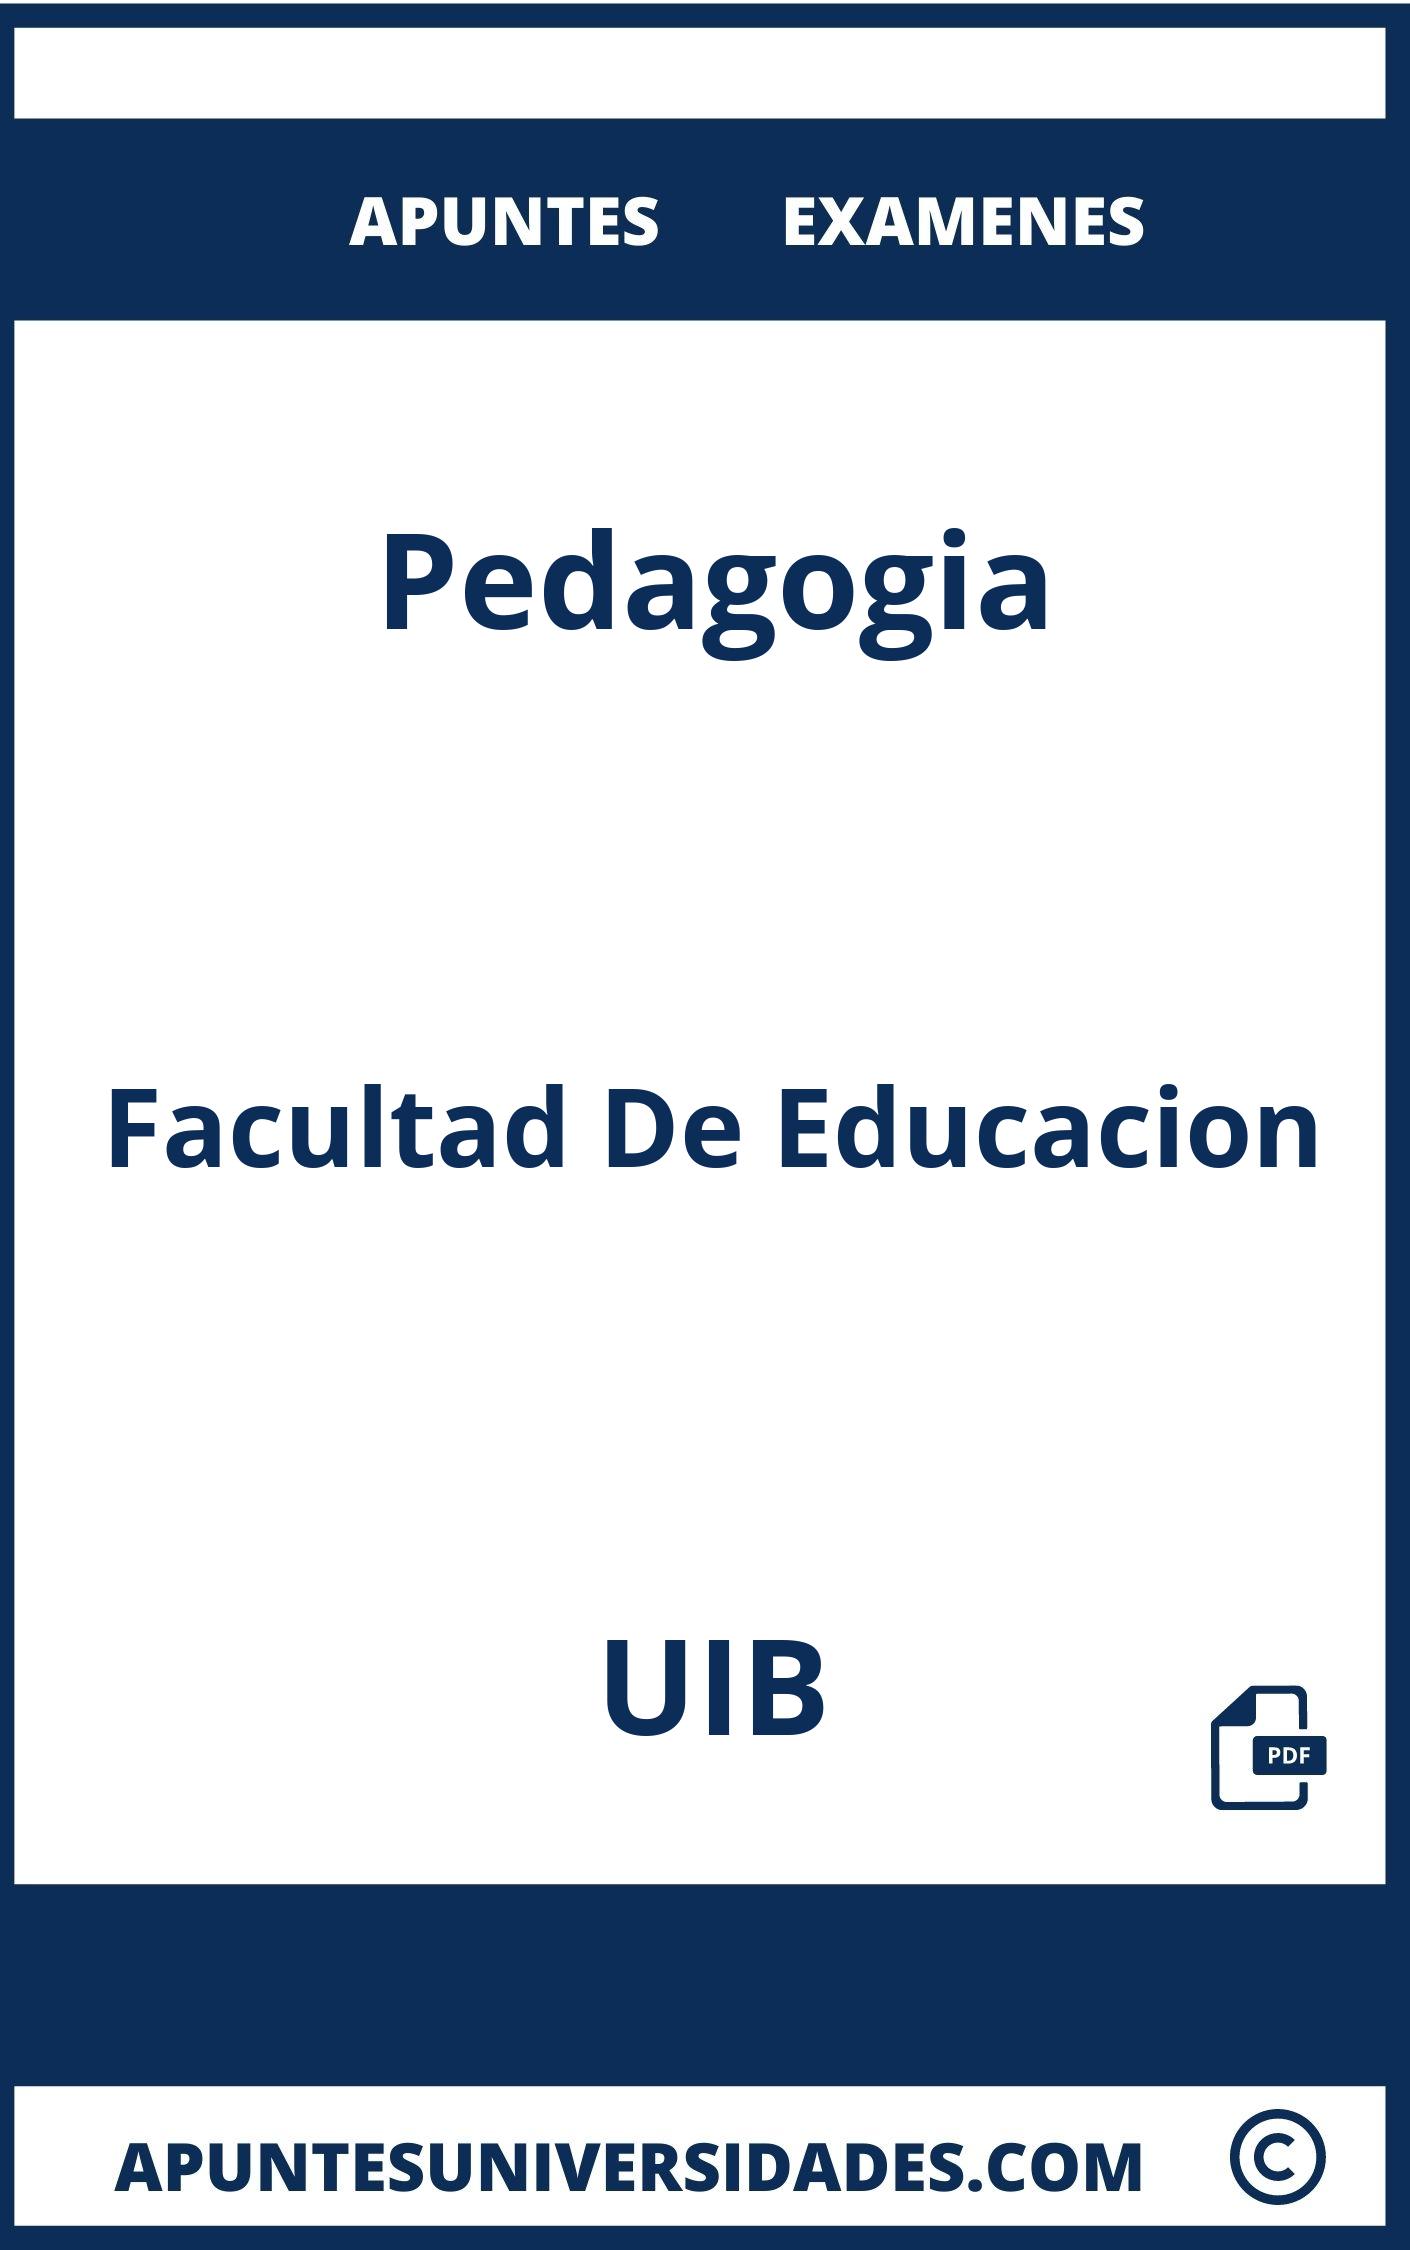 Apuntes Pedagogia UIB y Examenes